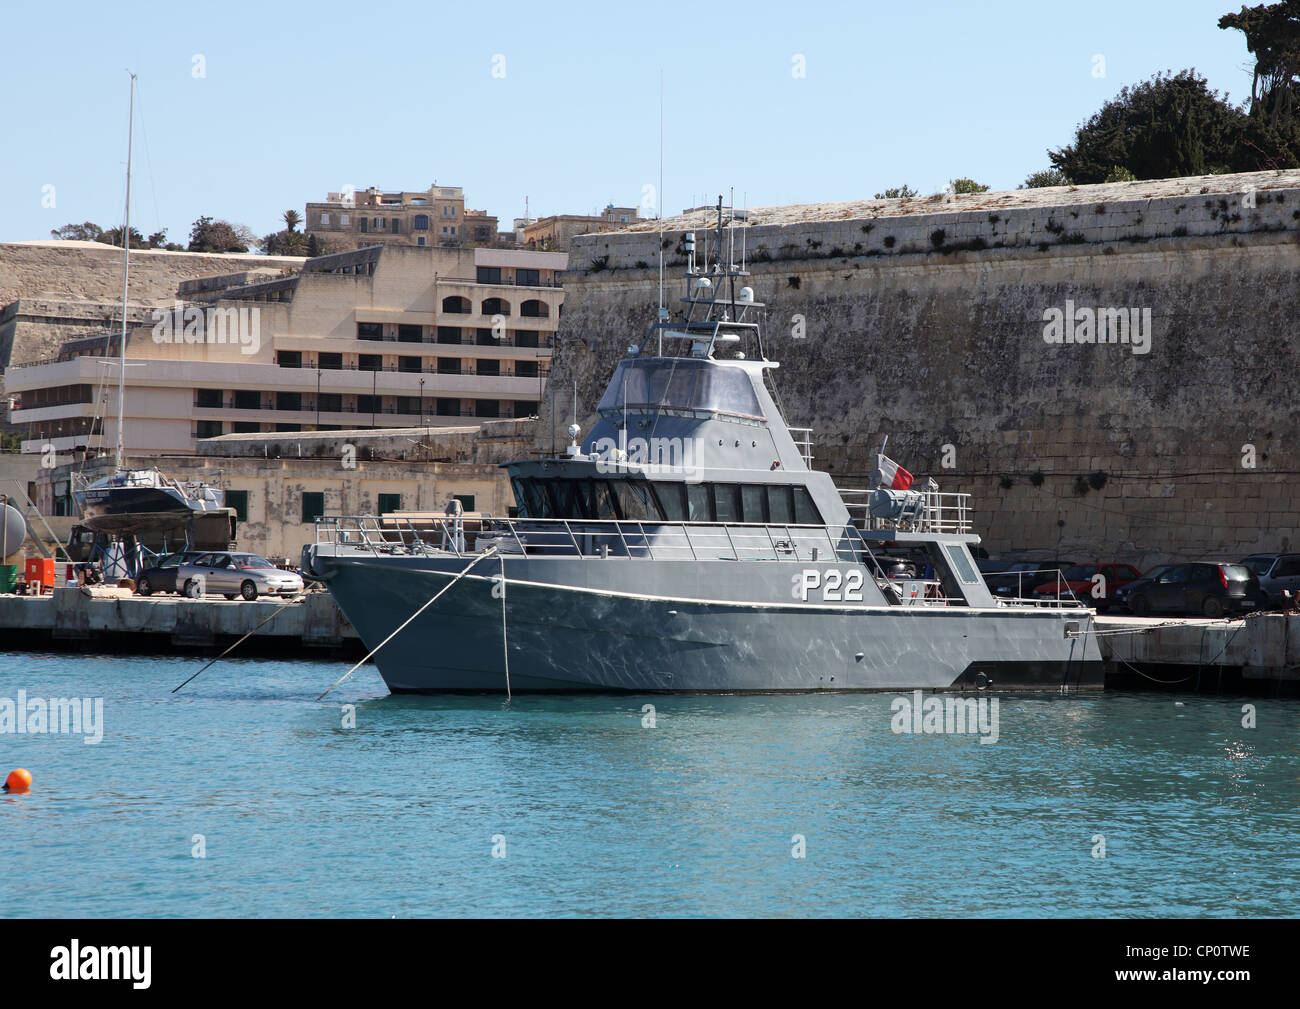 Il Maltese forze armate Inshore motovedetta P22 il porto di La Valletta, Malta, il sud dell'Europa. Foto Stock